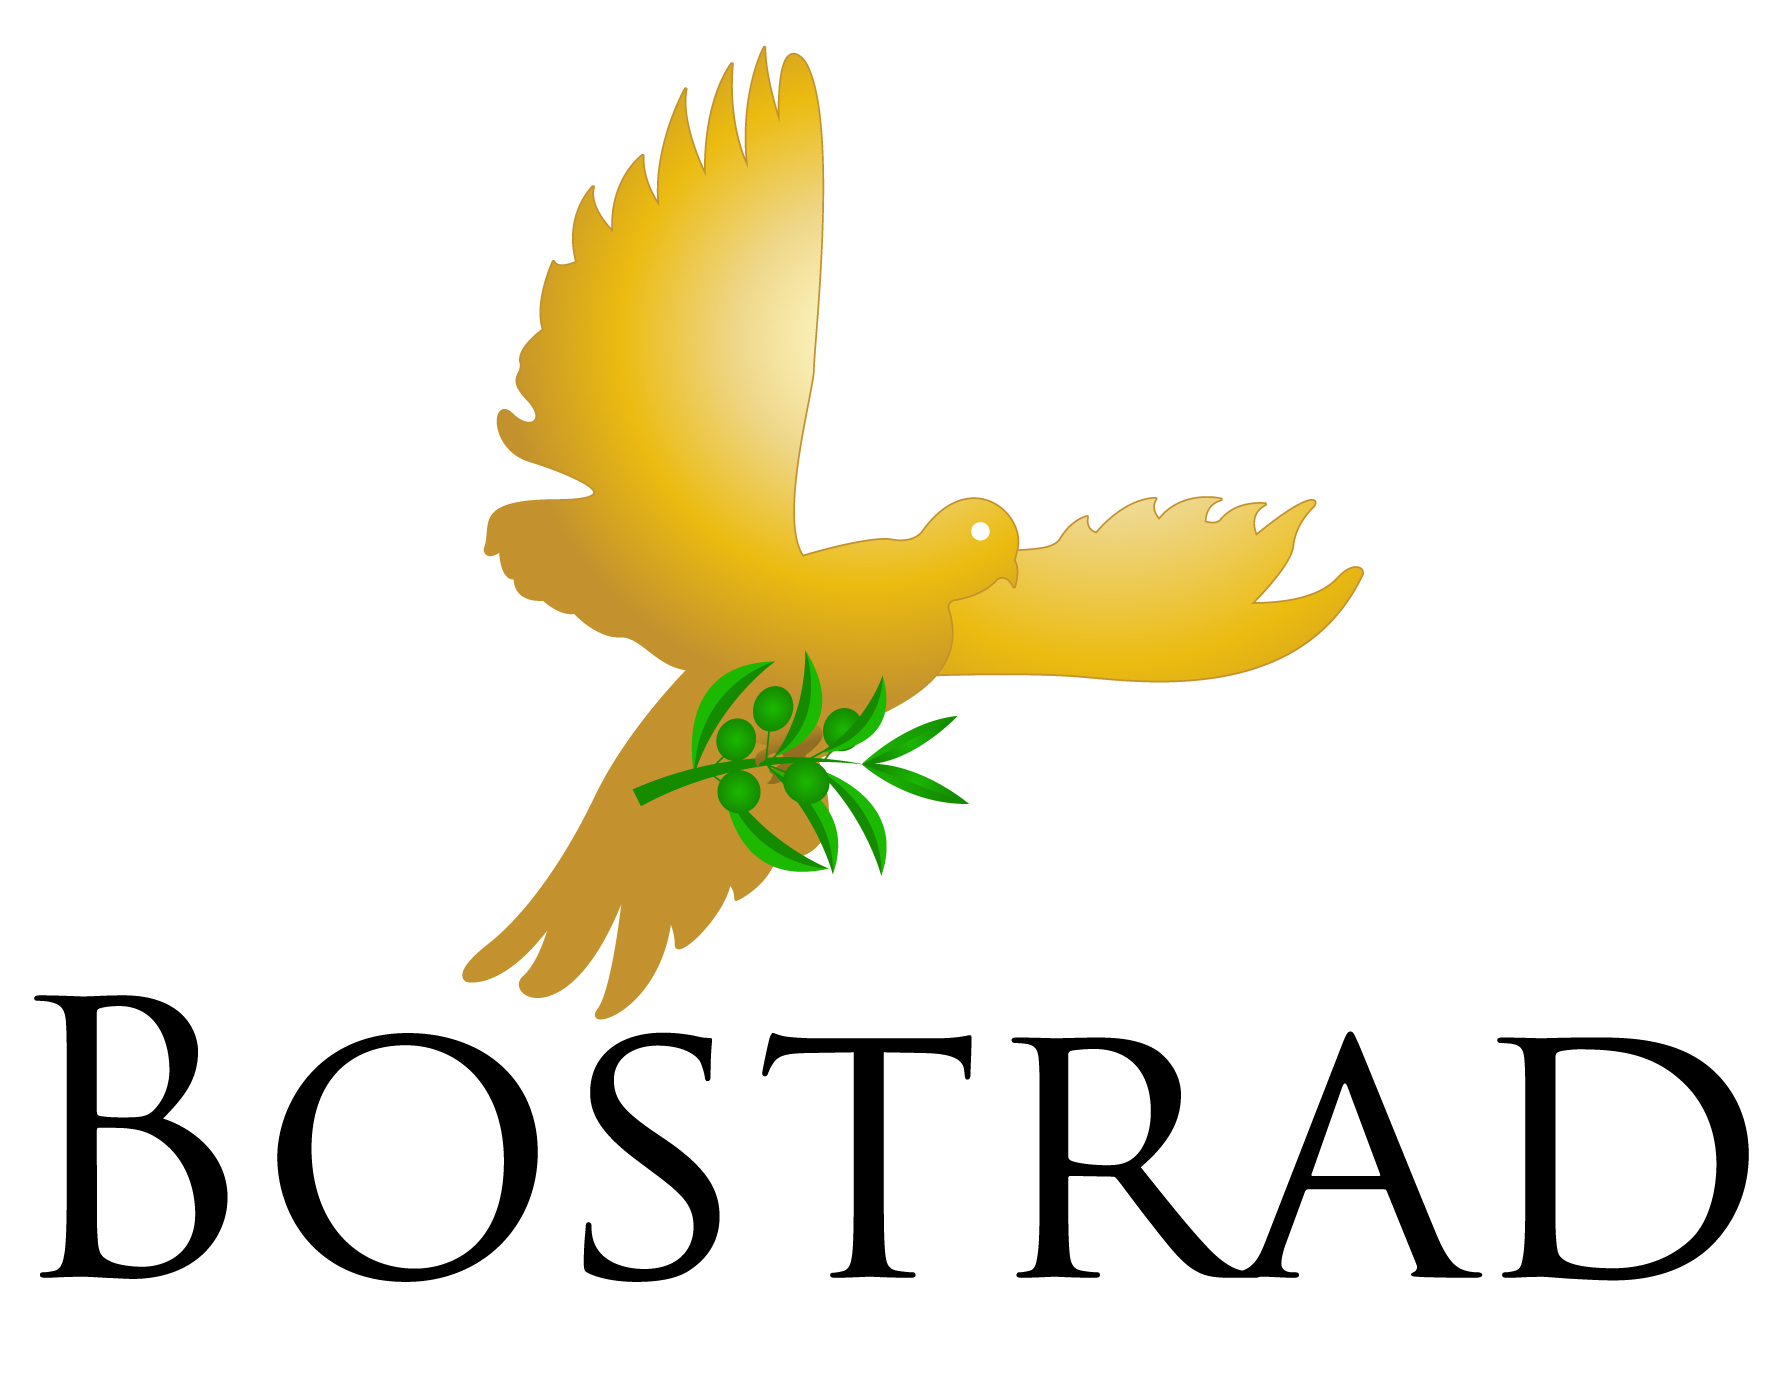 Bostrad